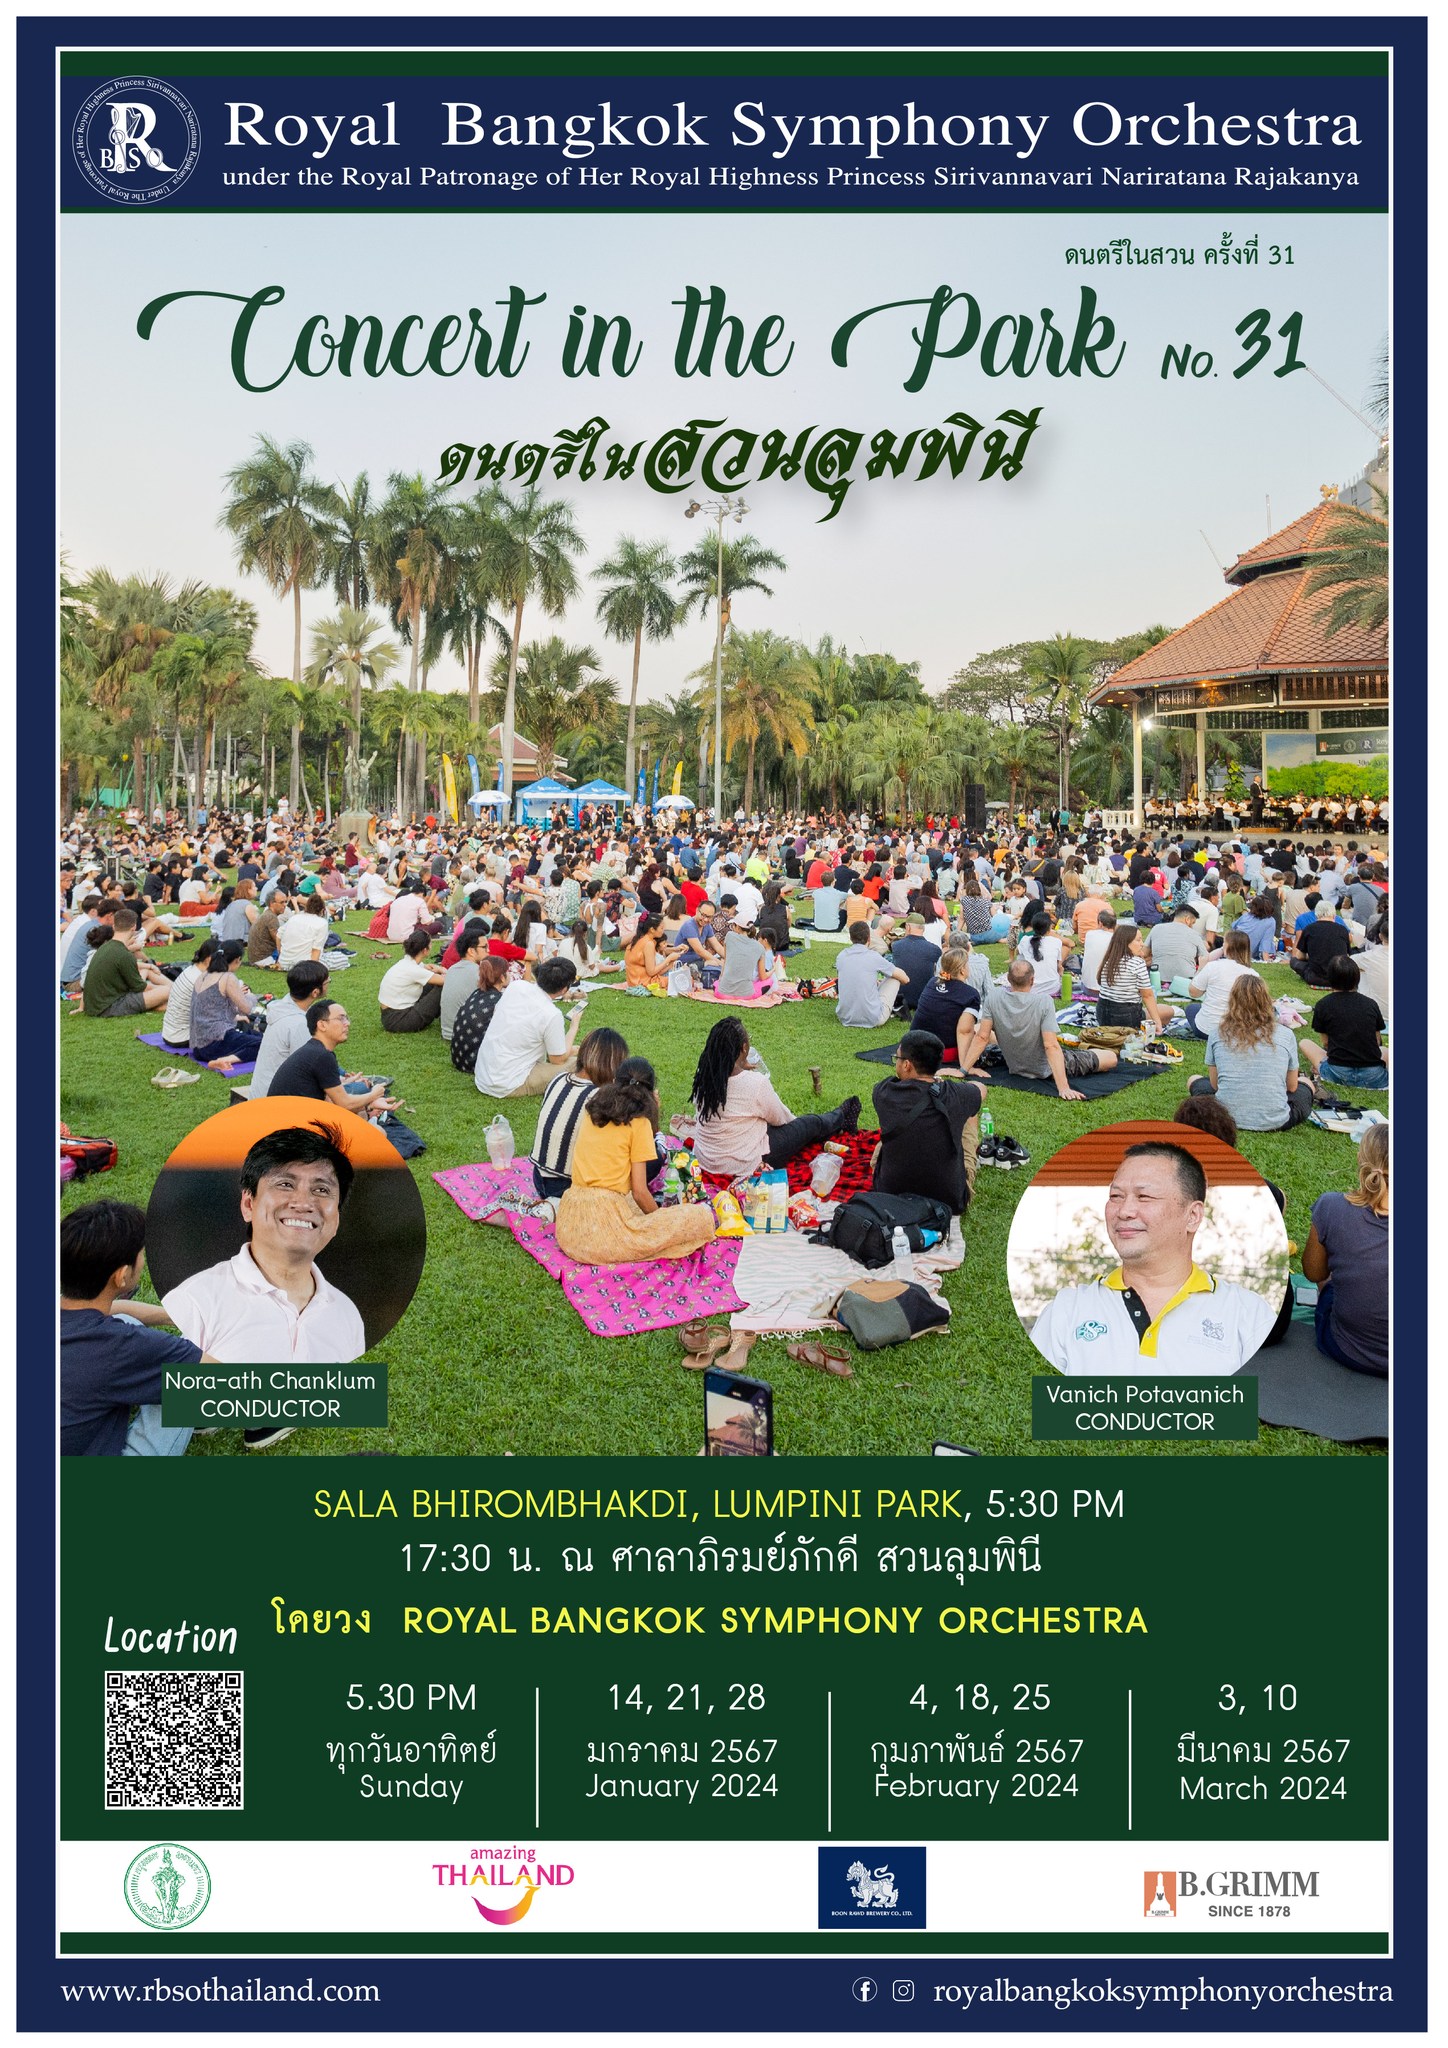 ชวนมานั่งชิลฟังเพลงคลาสสิคฟรี Concert in the Park ครั้งที่ 31 ที่สวนลุมพินี